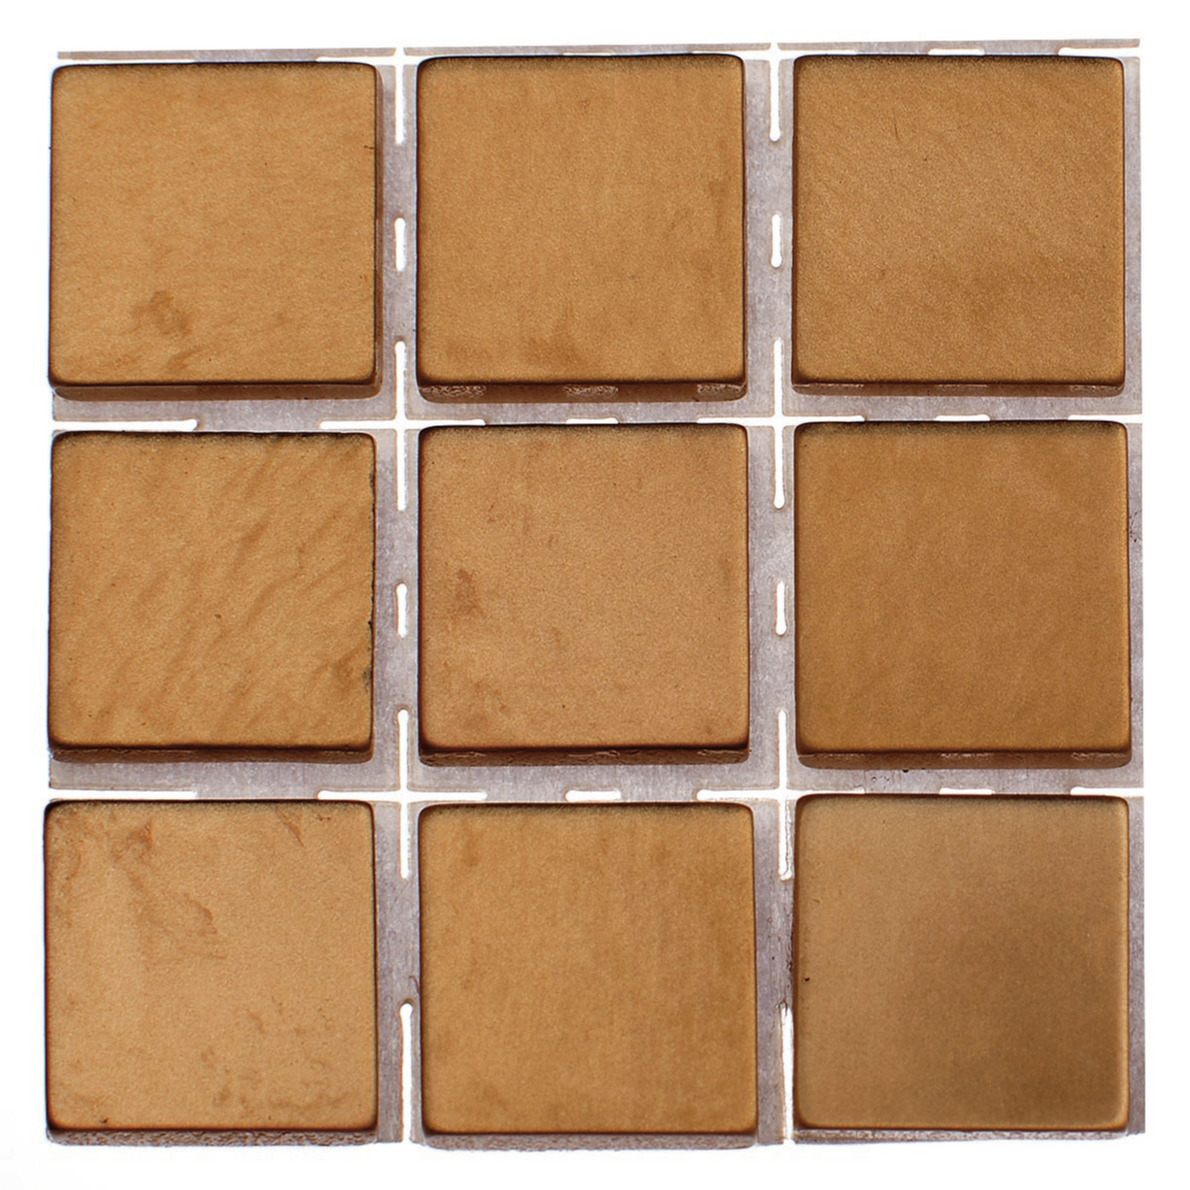 63x stuks mozaieken maken steentjes-tegels kleur brons 10 x 10 x 2 mm